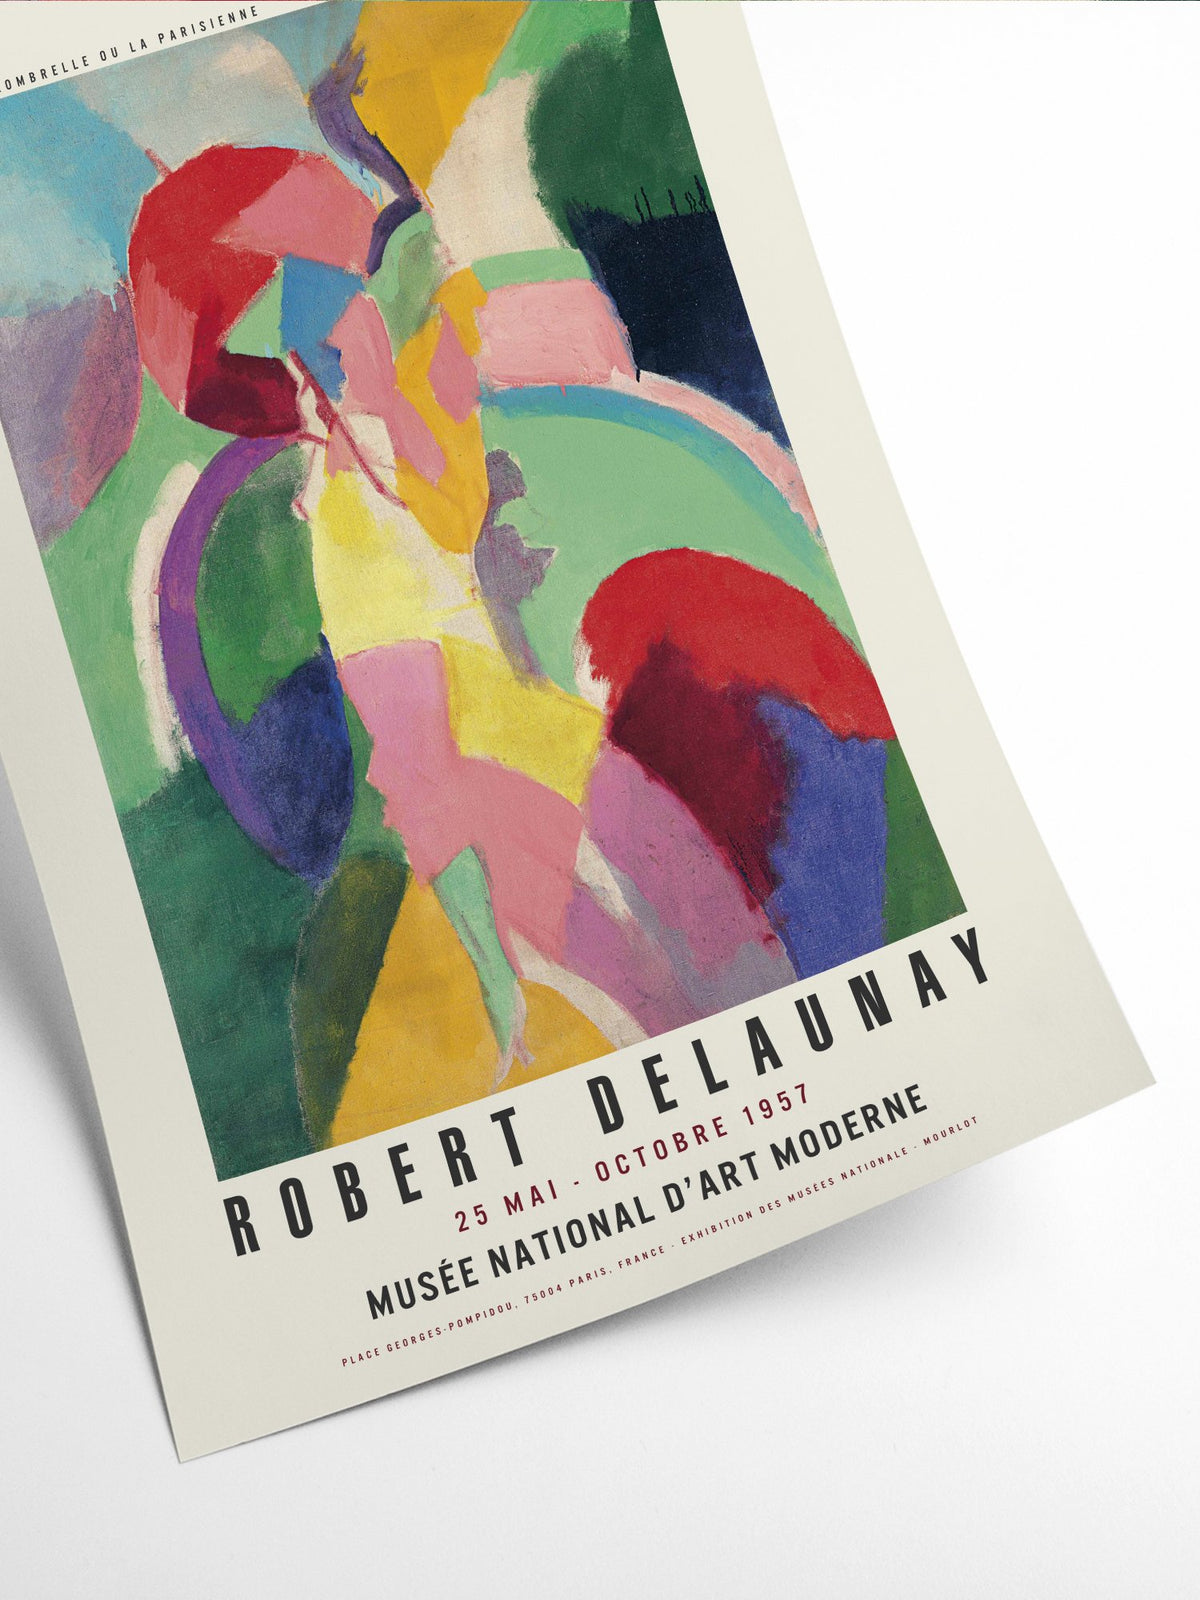 Kunstprint i smukke farver til væggen · Robert Delaunay – Niedziella & Friends (5776987521178)